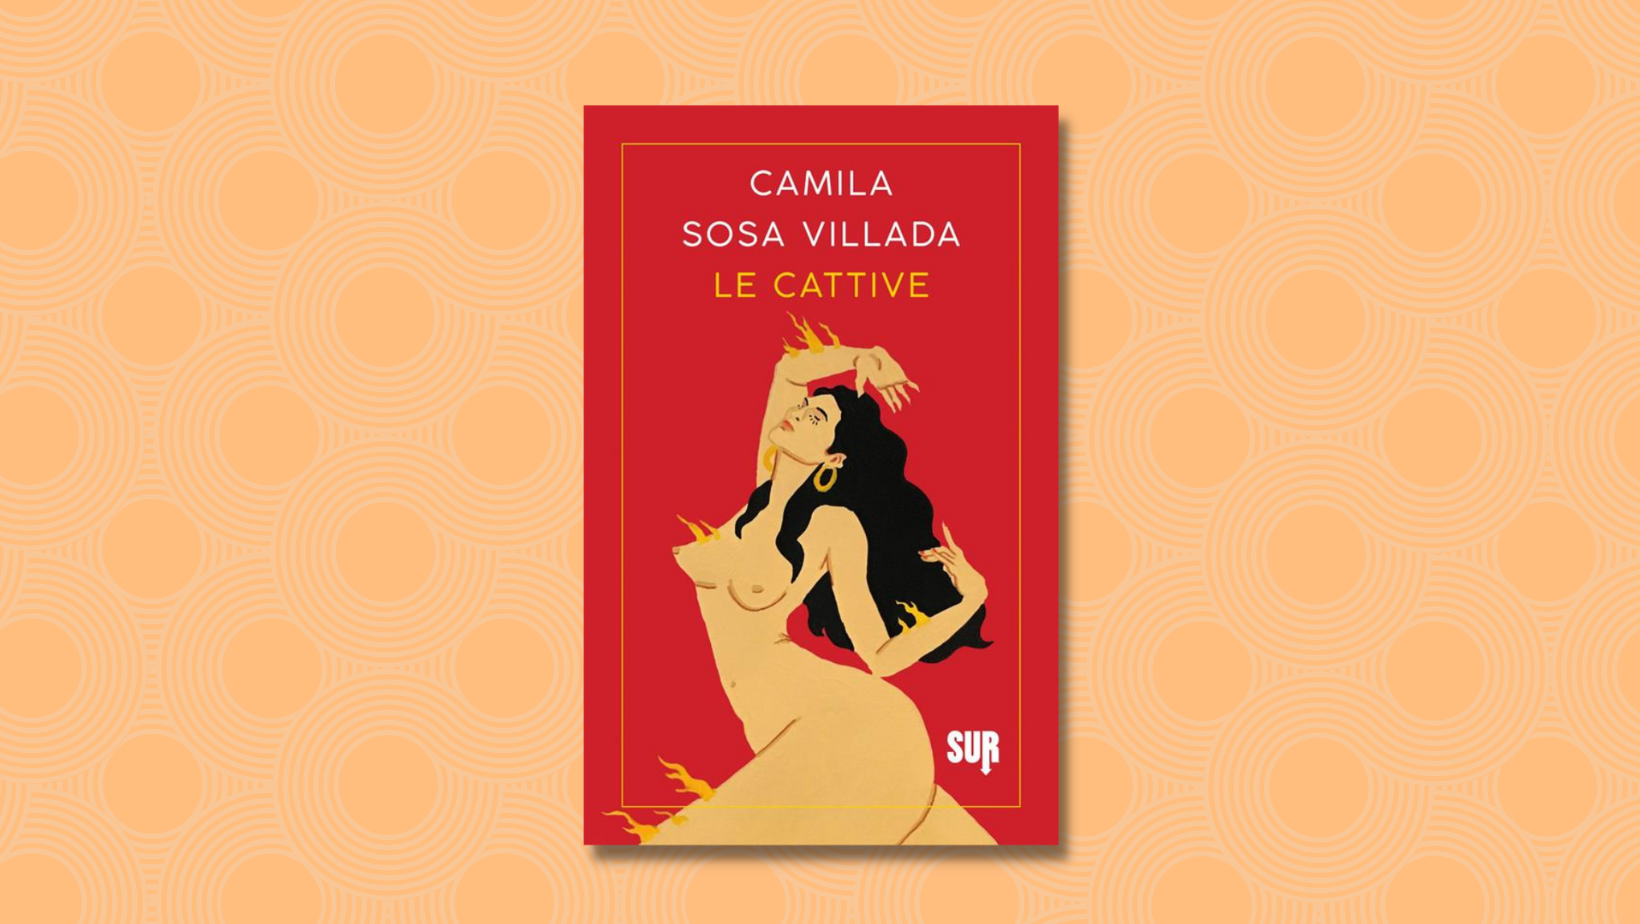 Le Cattive Di Camila Sosa Villada. Una Recensione Di Claudia Mazzilli